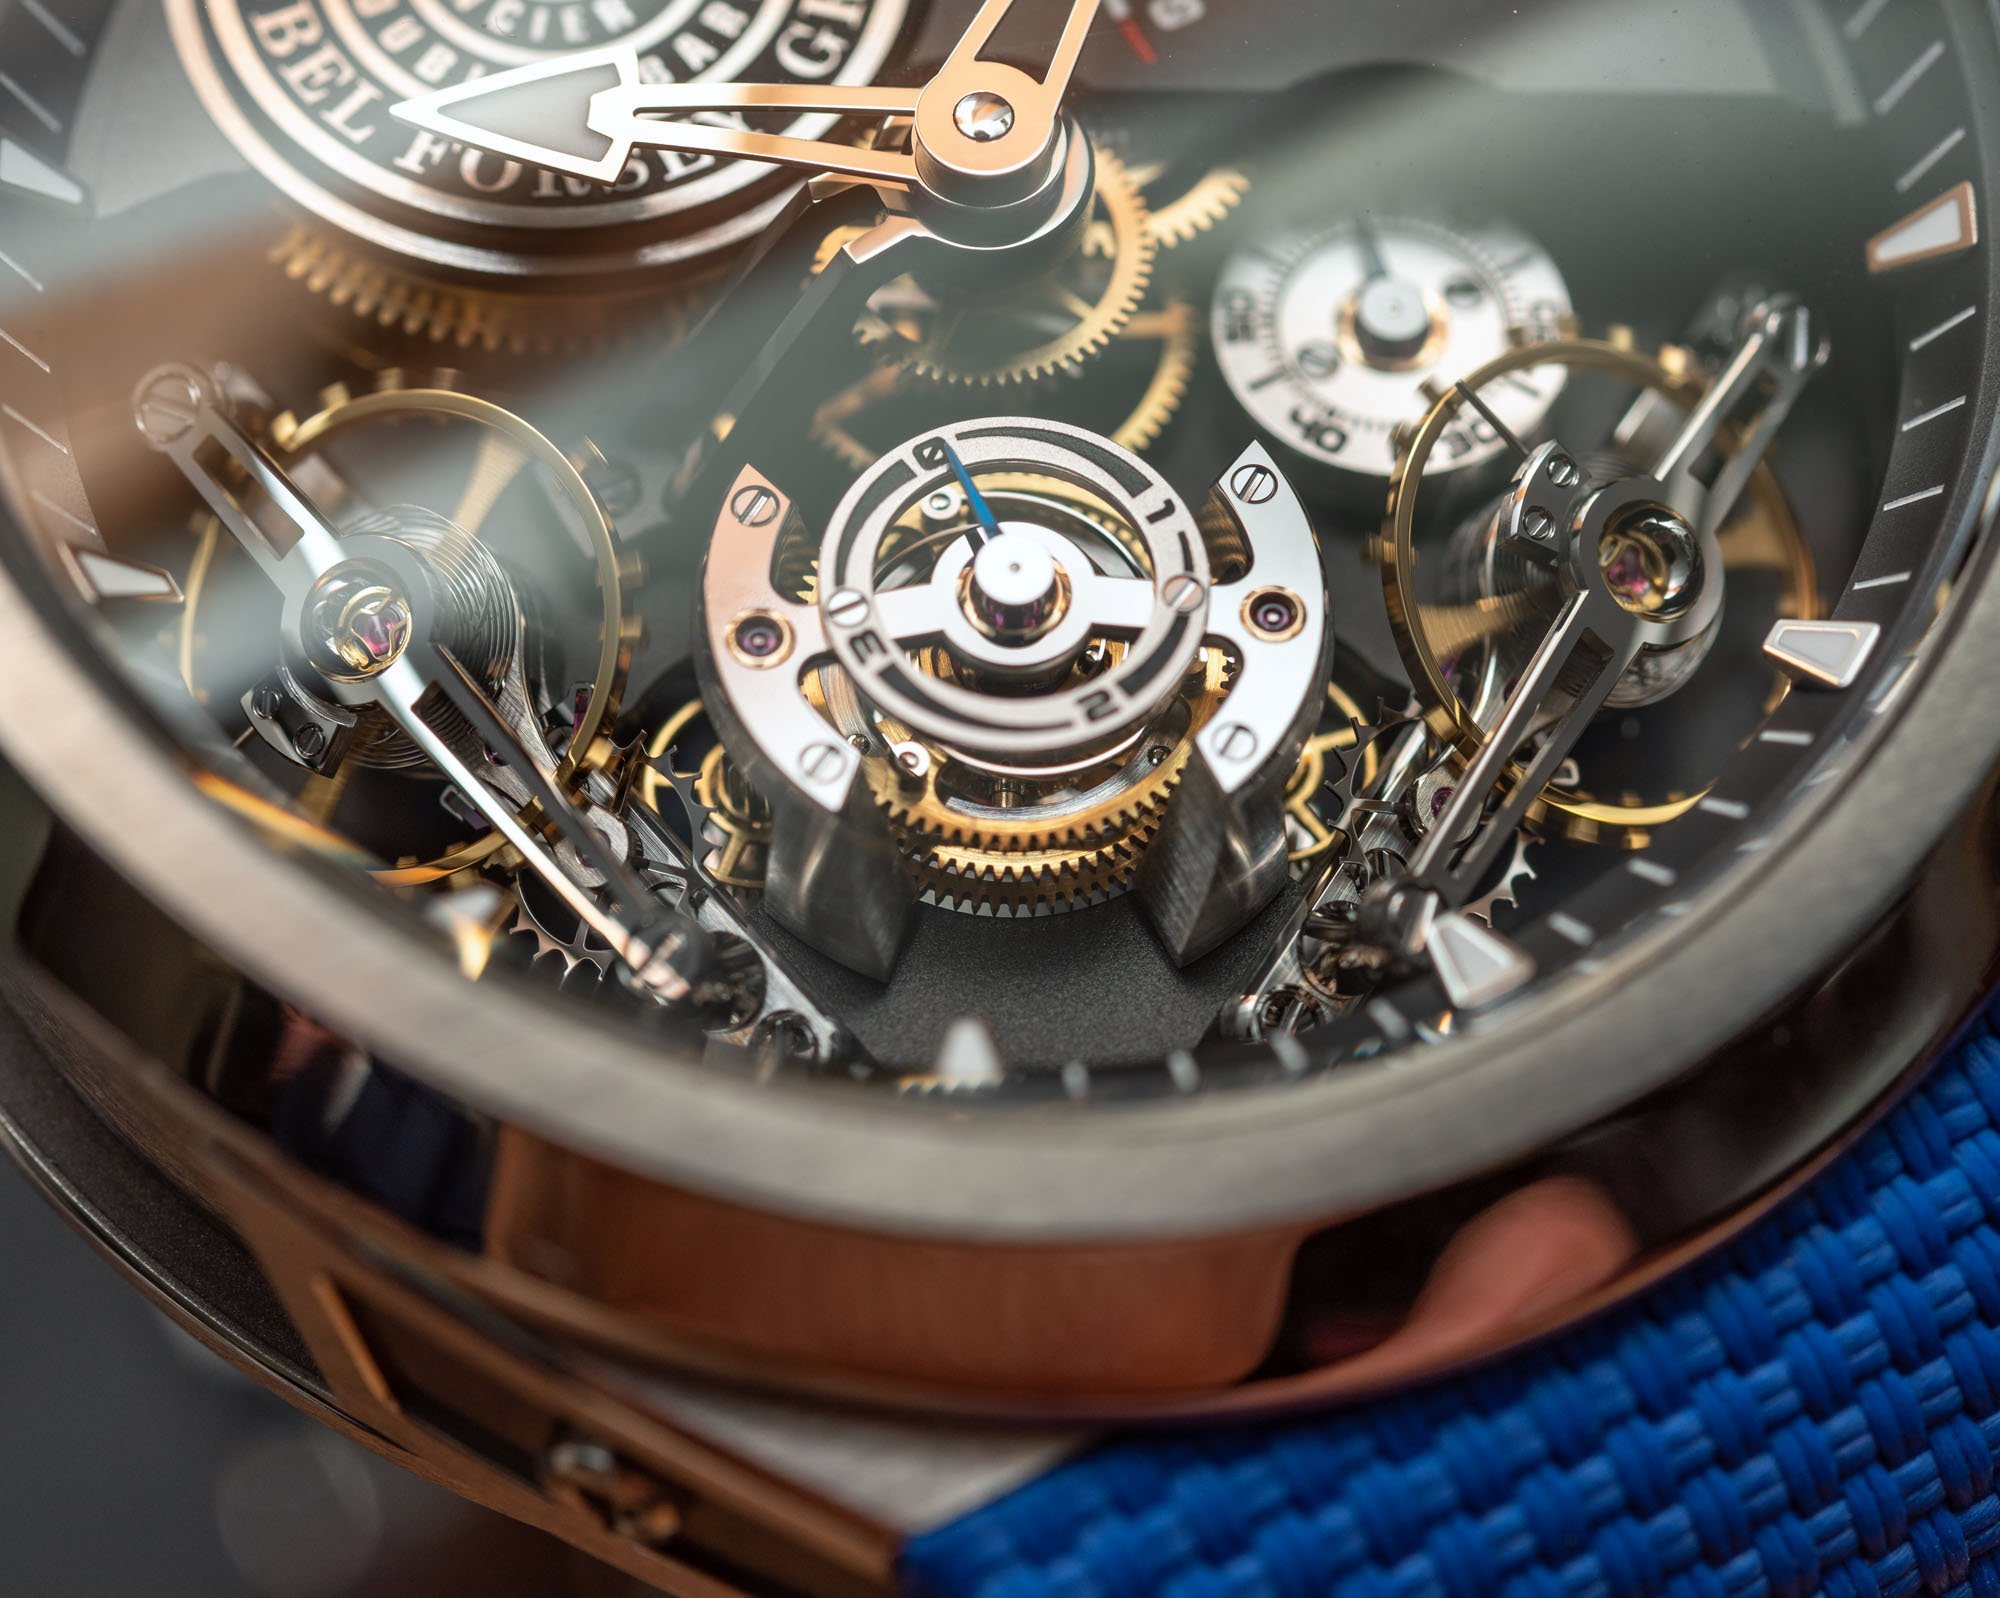 Часы Greubel Forsey Double Balancier Convexe — это спортивные часы высокого часового искусства